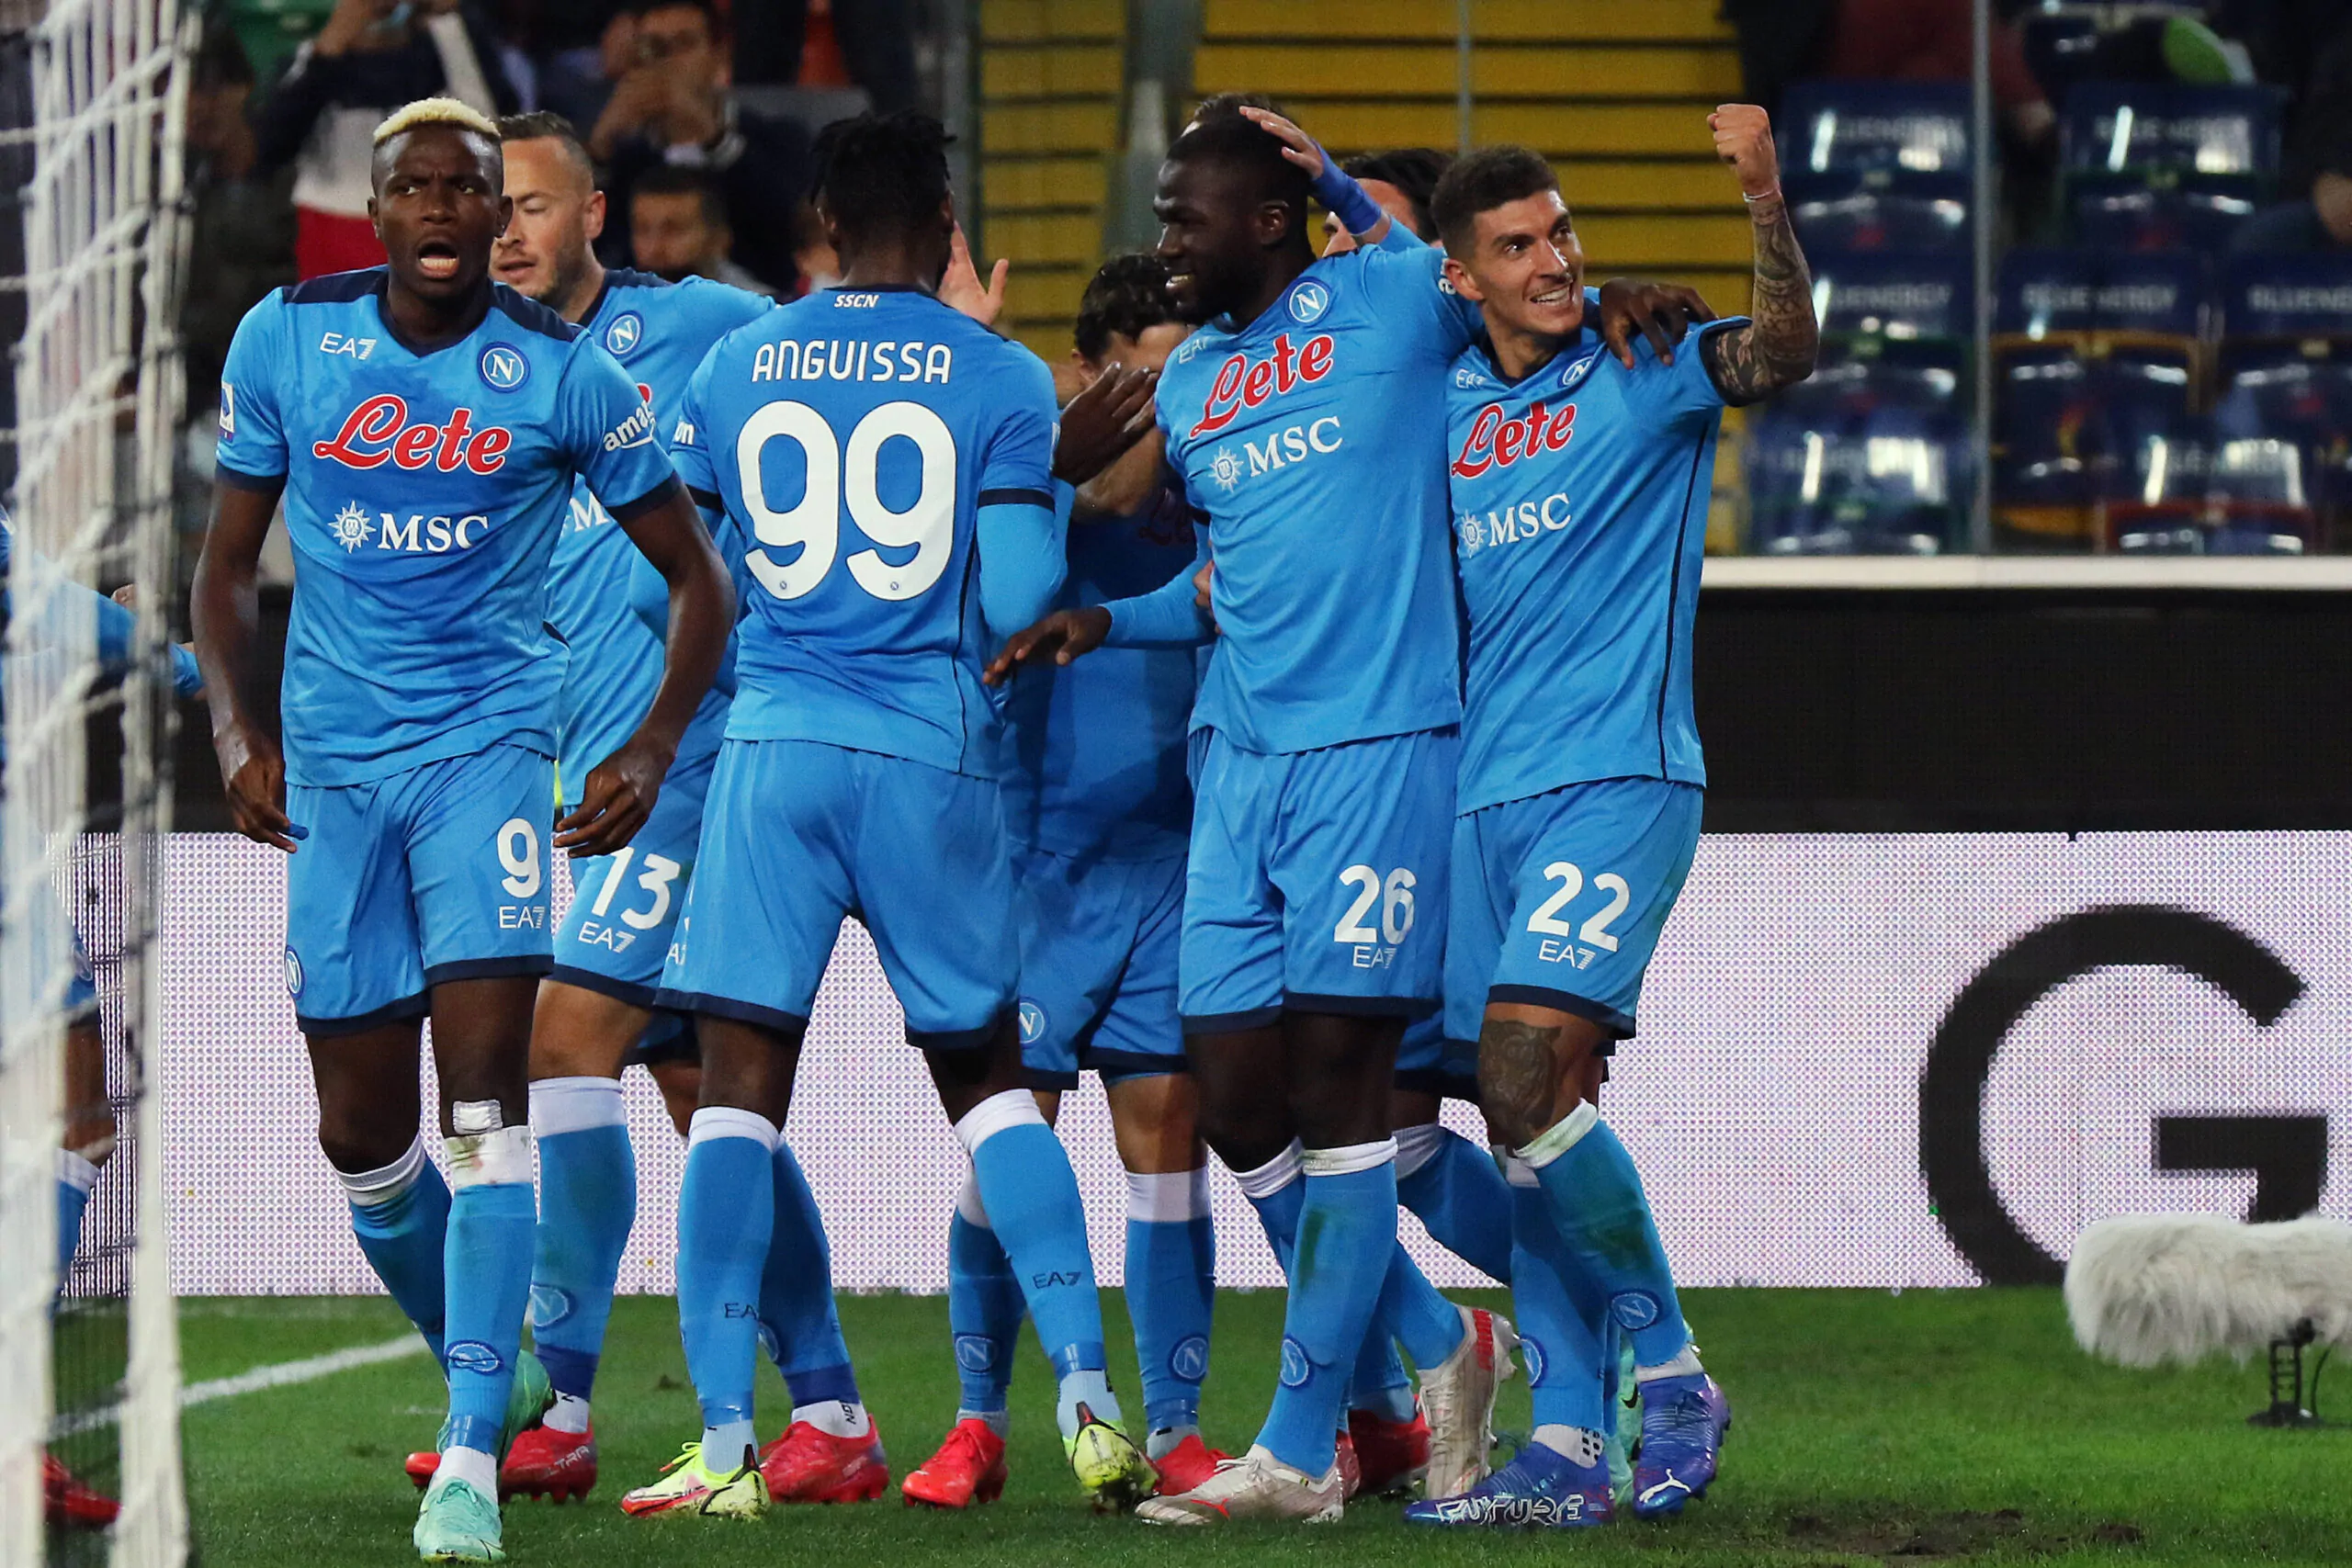 Il Napoli vince ancora, Juve a -10 dal primo posto: la situazione